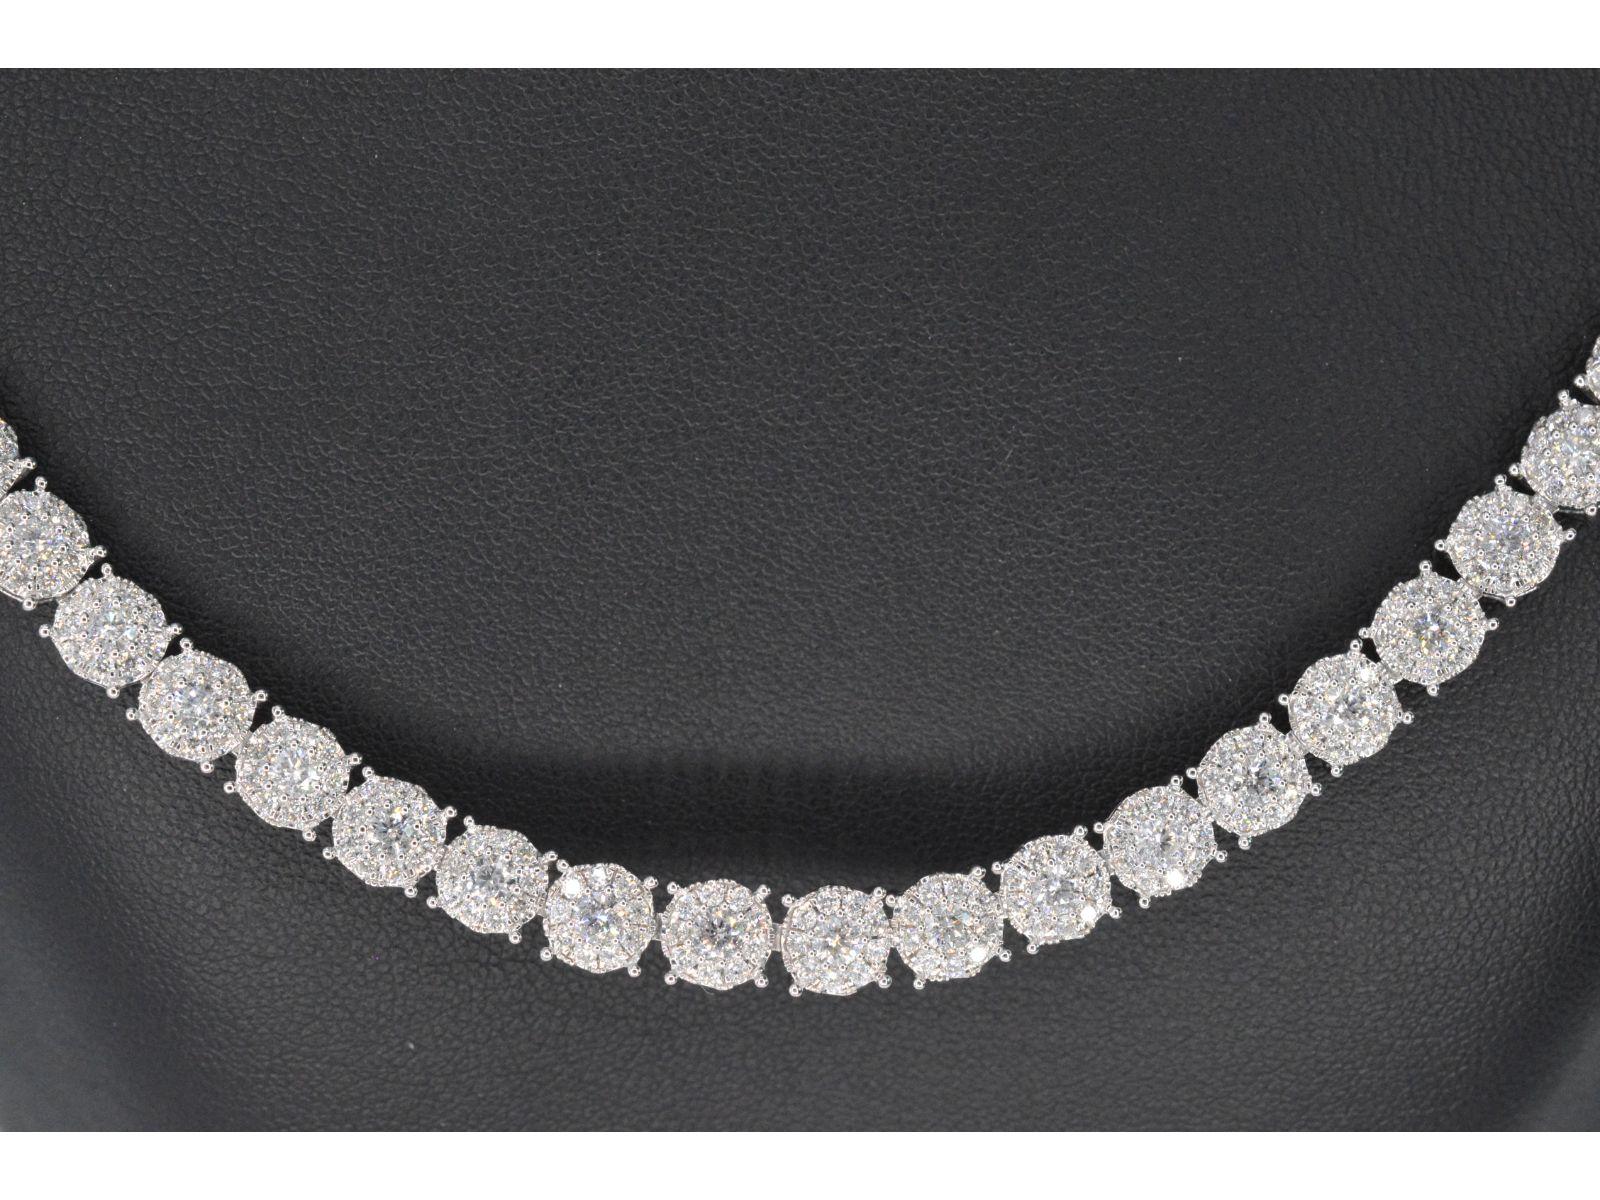 Wir stellen Ihnen unsere atemberaubende Weißgold-Halskette mit Diamanten von insgesamt 10,00 Karat vor. Dieses exquisite Stück besteht aus Diamanten im Brillantschliff mit einem Farbgrad von F-G und einem Reinheitsgrad von SI-P. Die aus 18 Karat